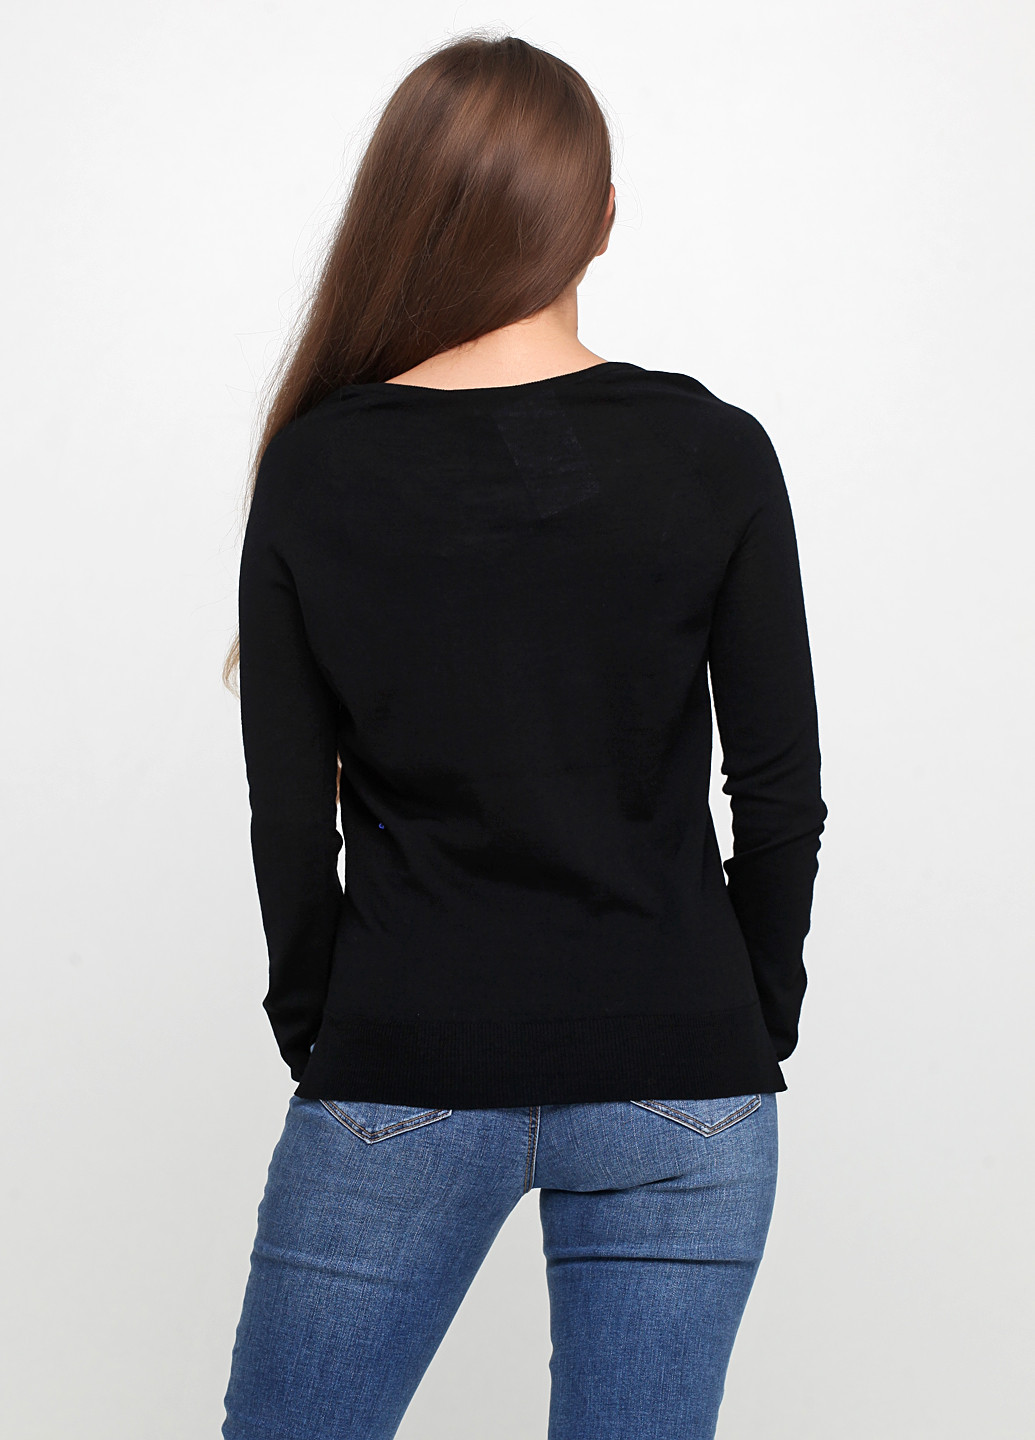 Черный демисезонный пуловер пуловер Morgan